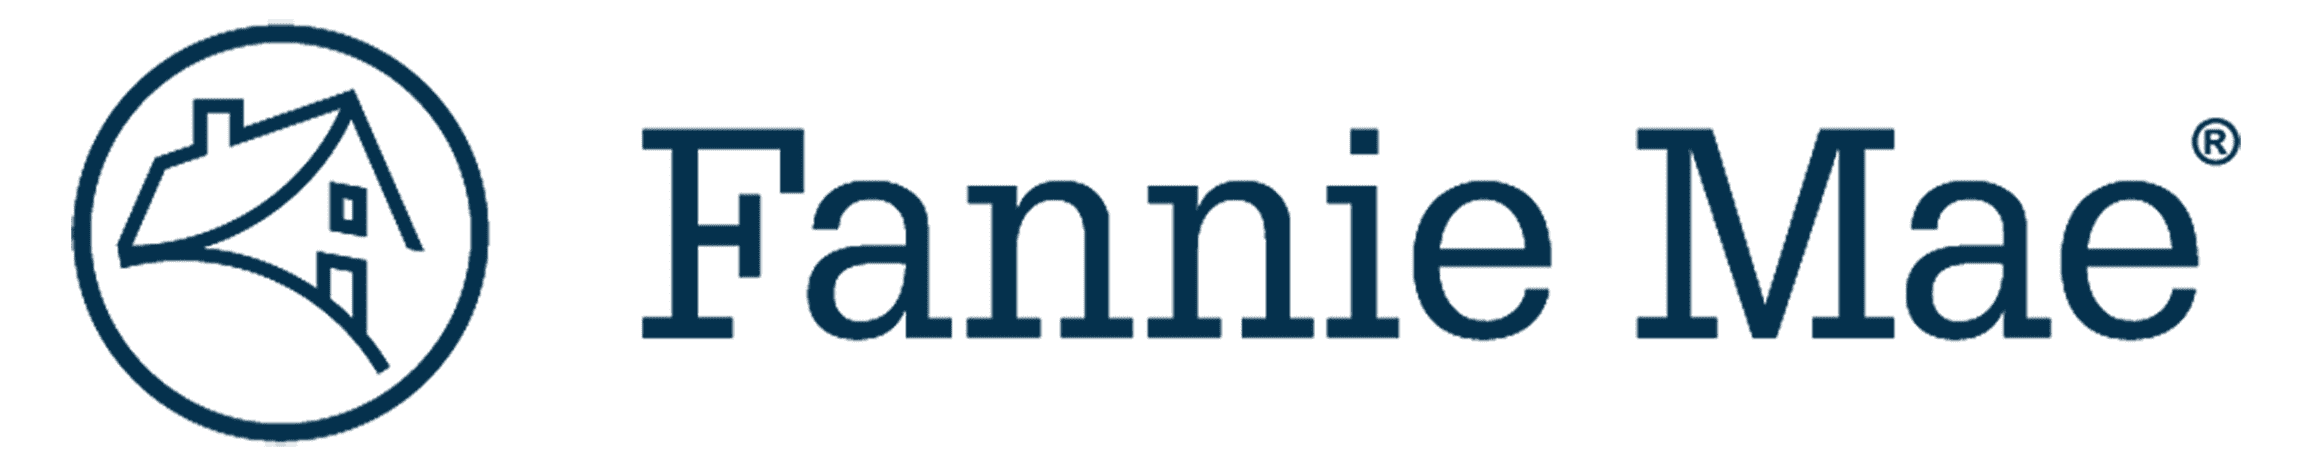 Fannie-Mae-Logo